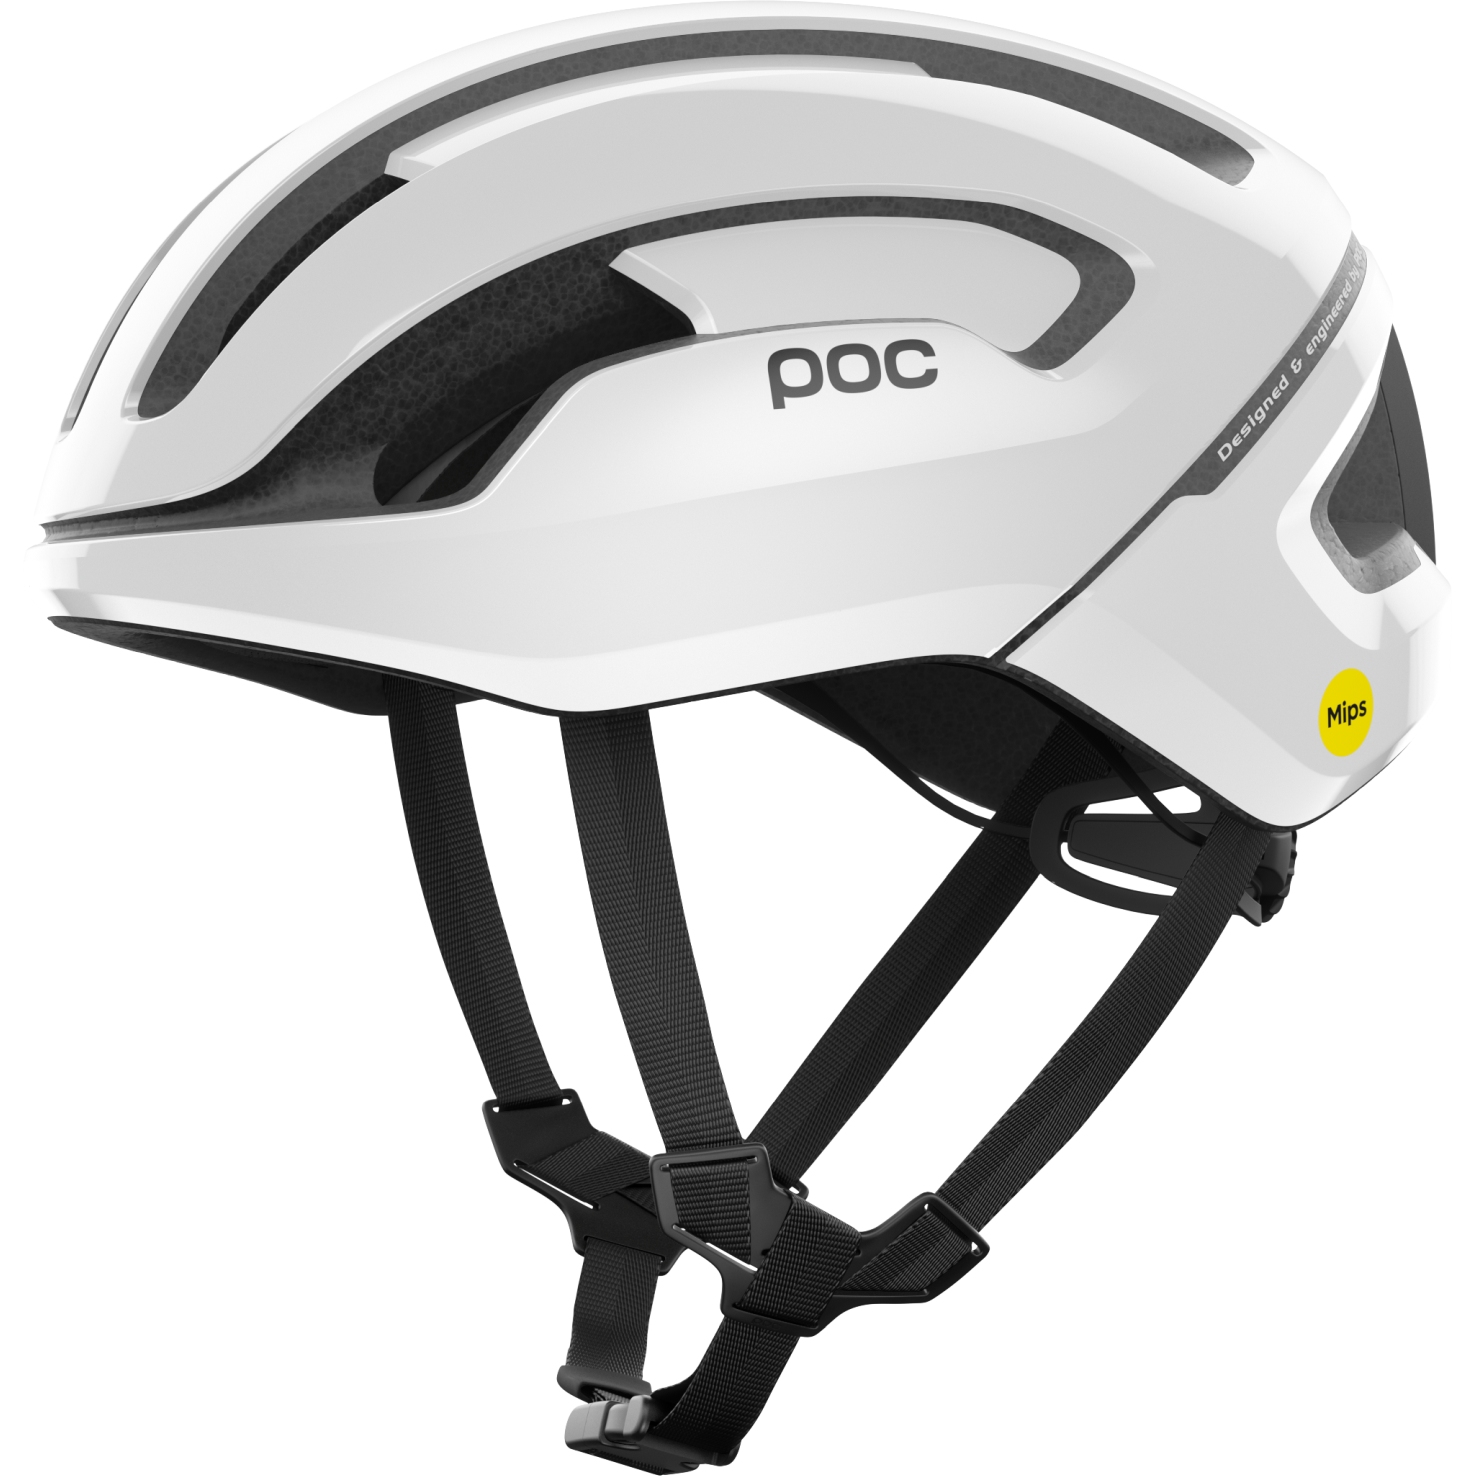 Produktbild von POC Omne Air MIPS Helm - 1001 Hydrogen White